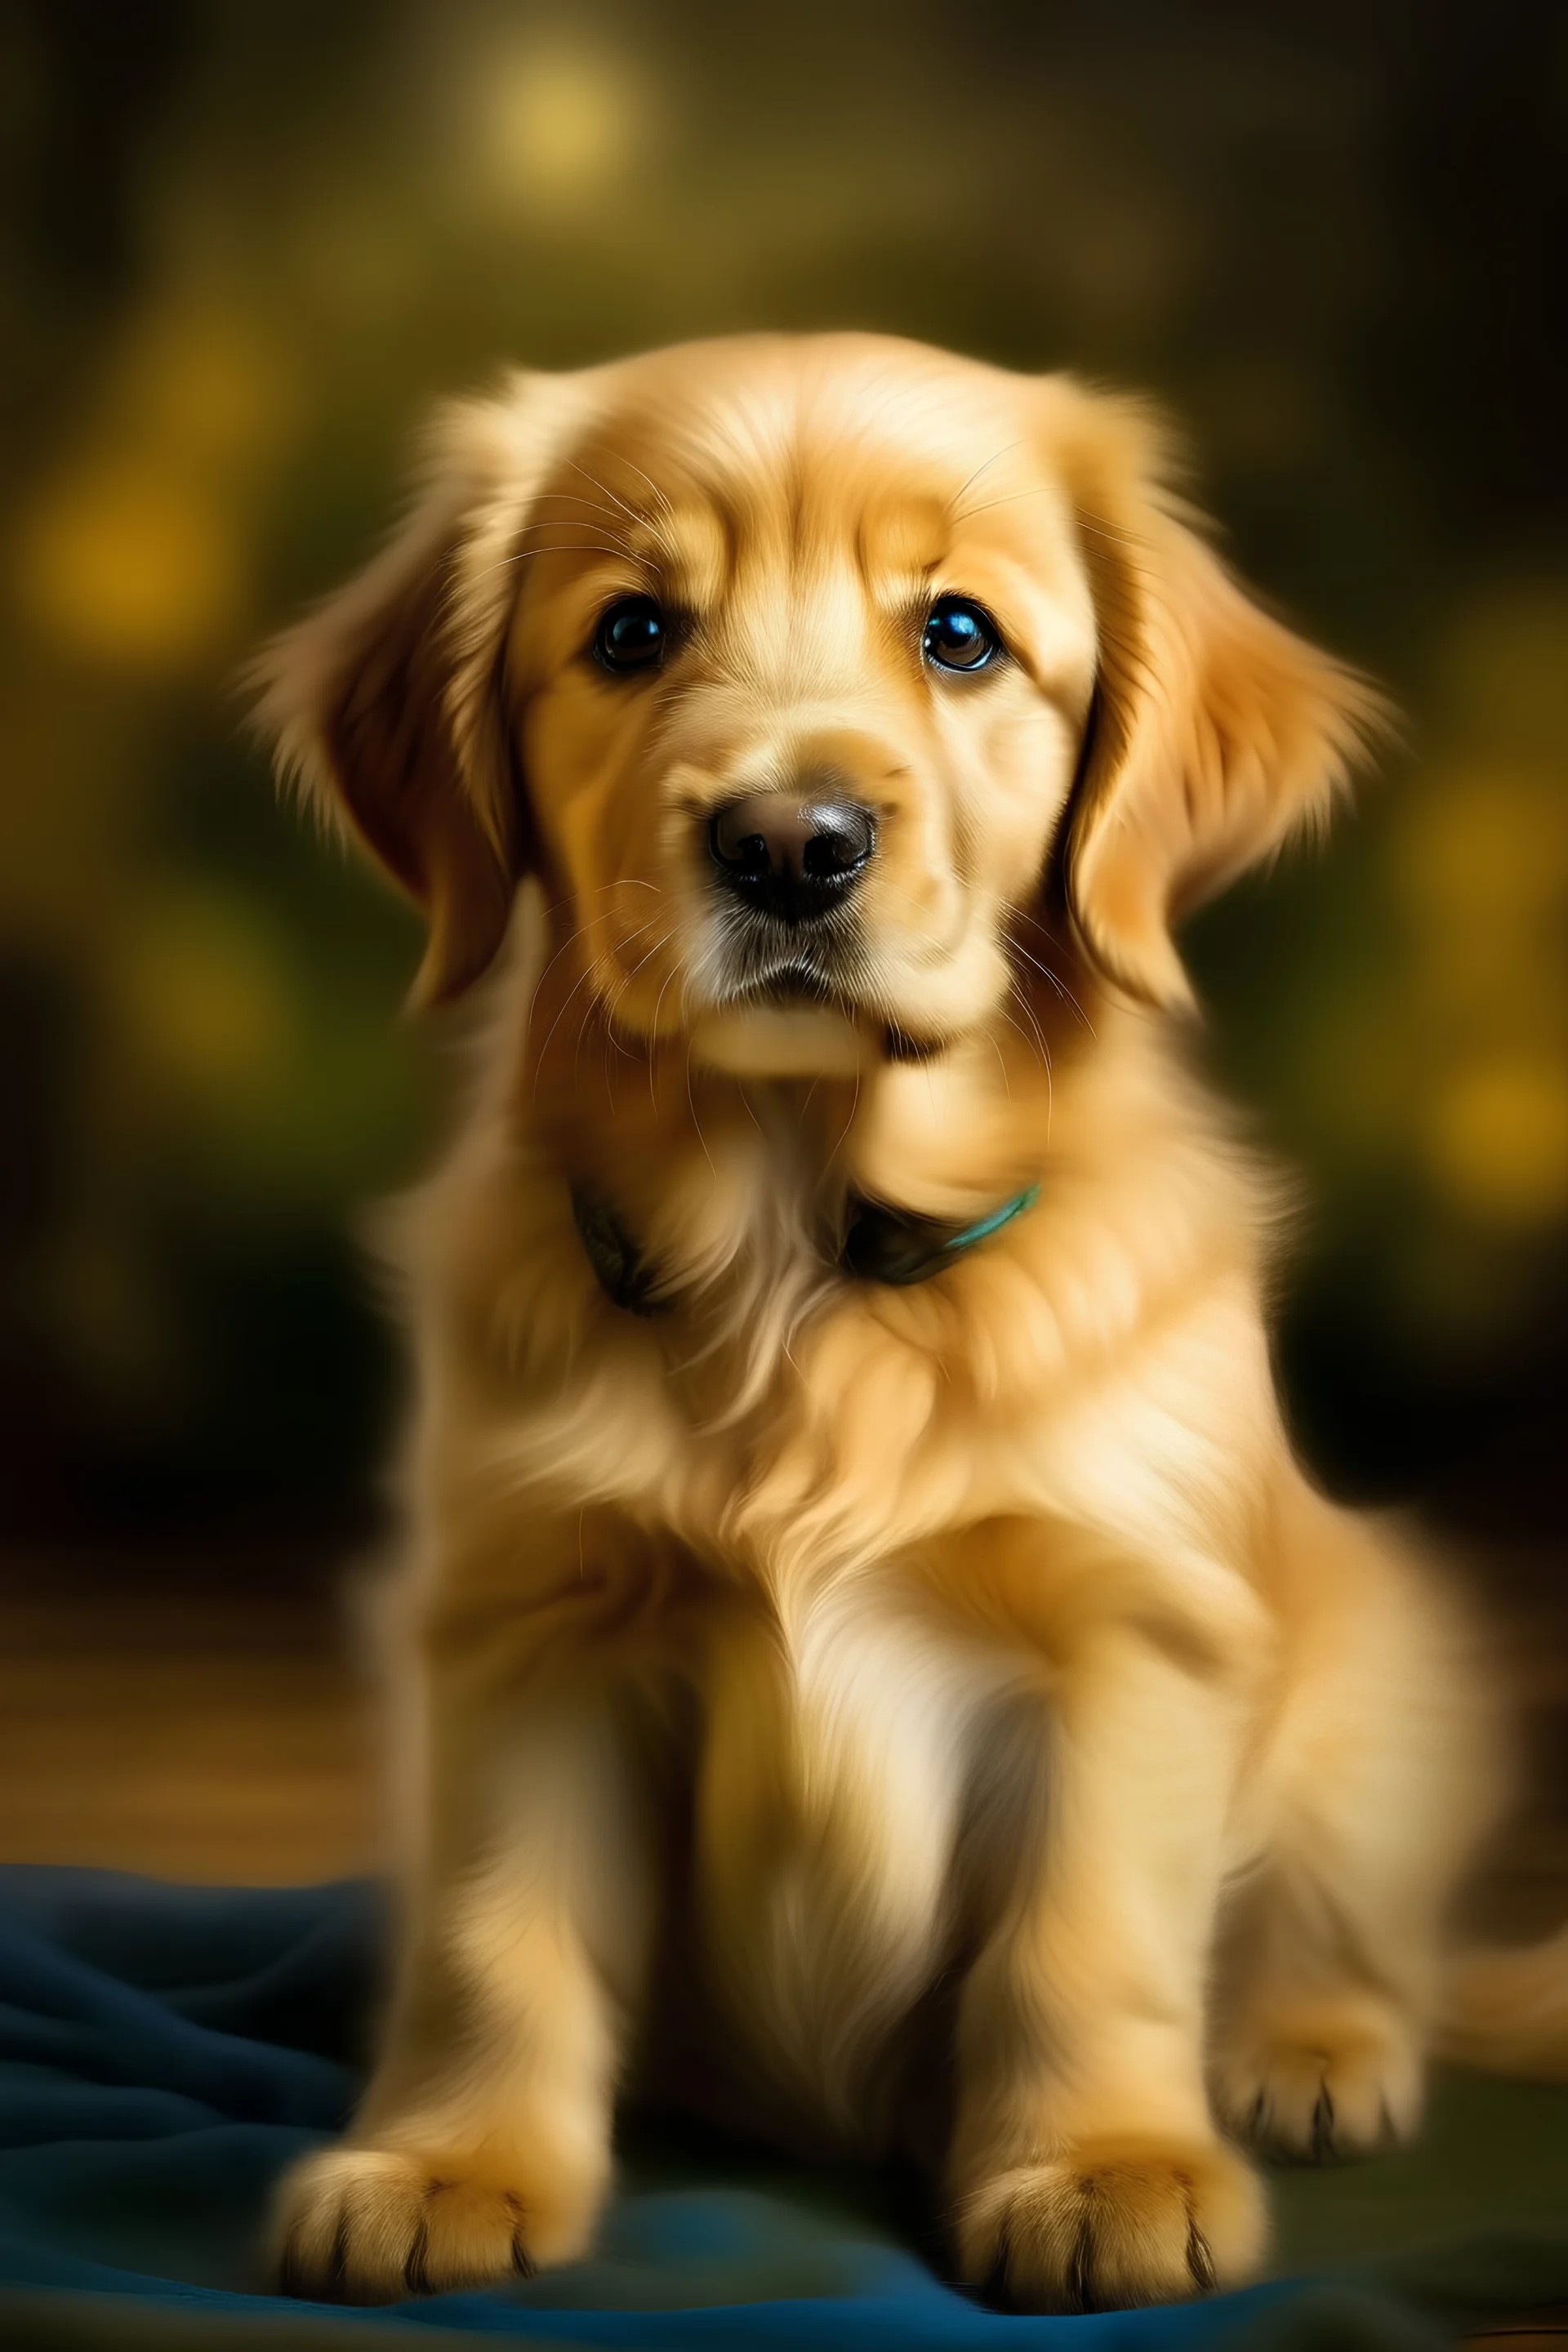 perro cachorro de un mes de vida golden retriever mirando de frente según pintor impresionista con fondo iluminado